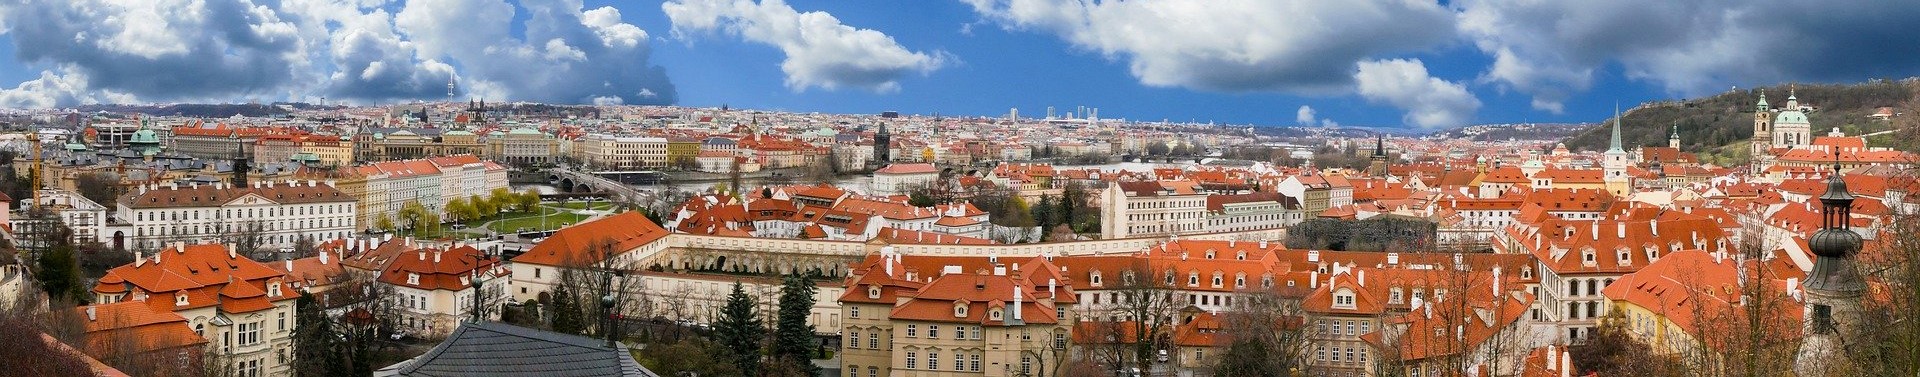 PRAGUE REVIEW|プラハ お客様の声